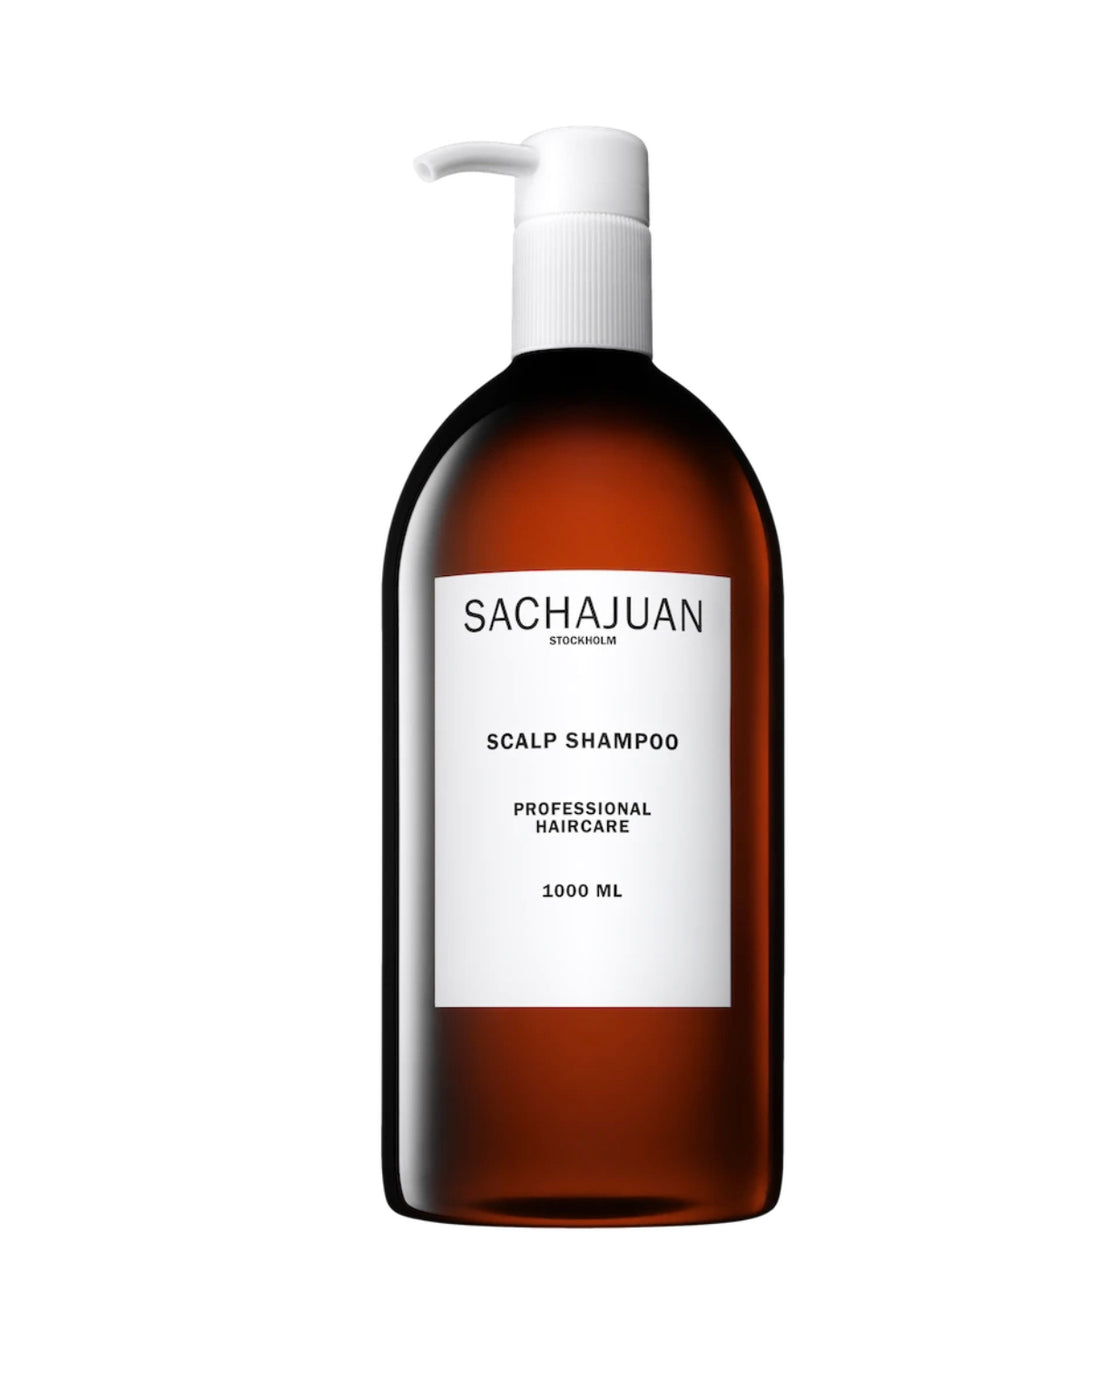 Sachajuan Scalp Shampoo 250ml  (dandruff)